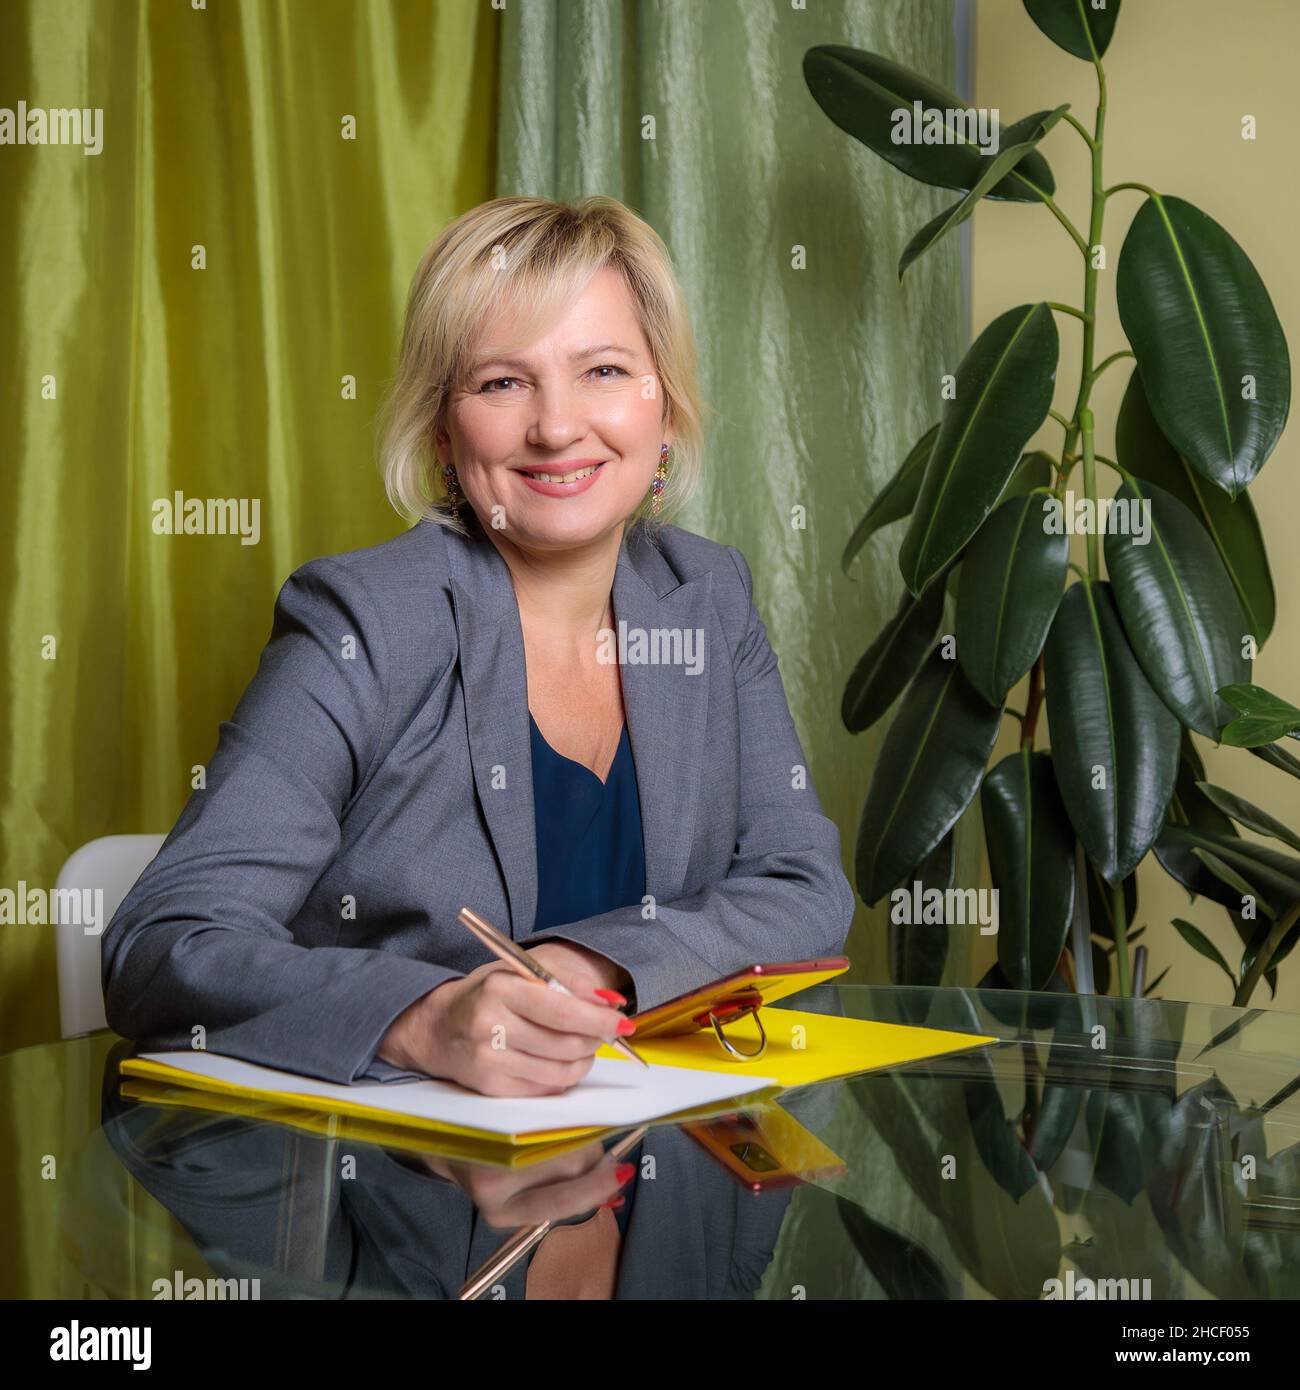 Eine attraktive Frau mittleren Alters, die Regisseurin, sitzt an einem Tisch im Büro und füllt Dokumente aus. Lächelt für die Kamera. Stockfoto